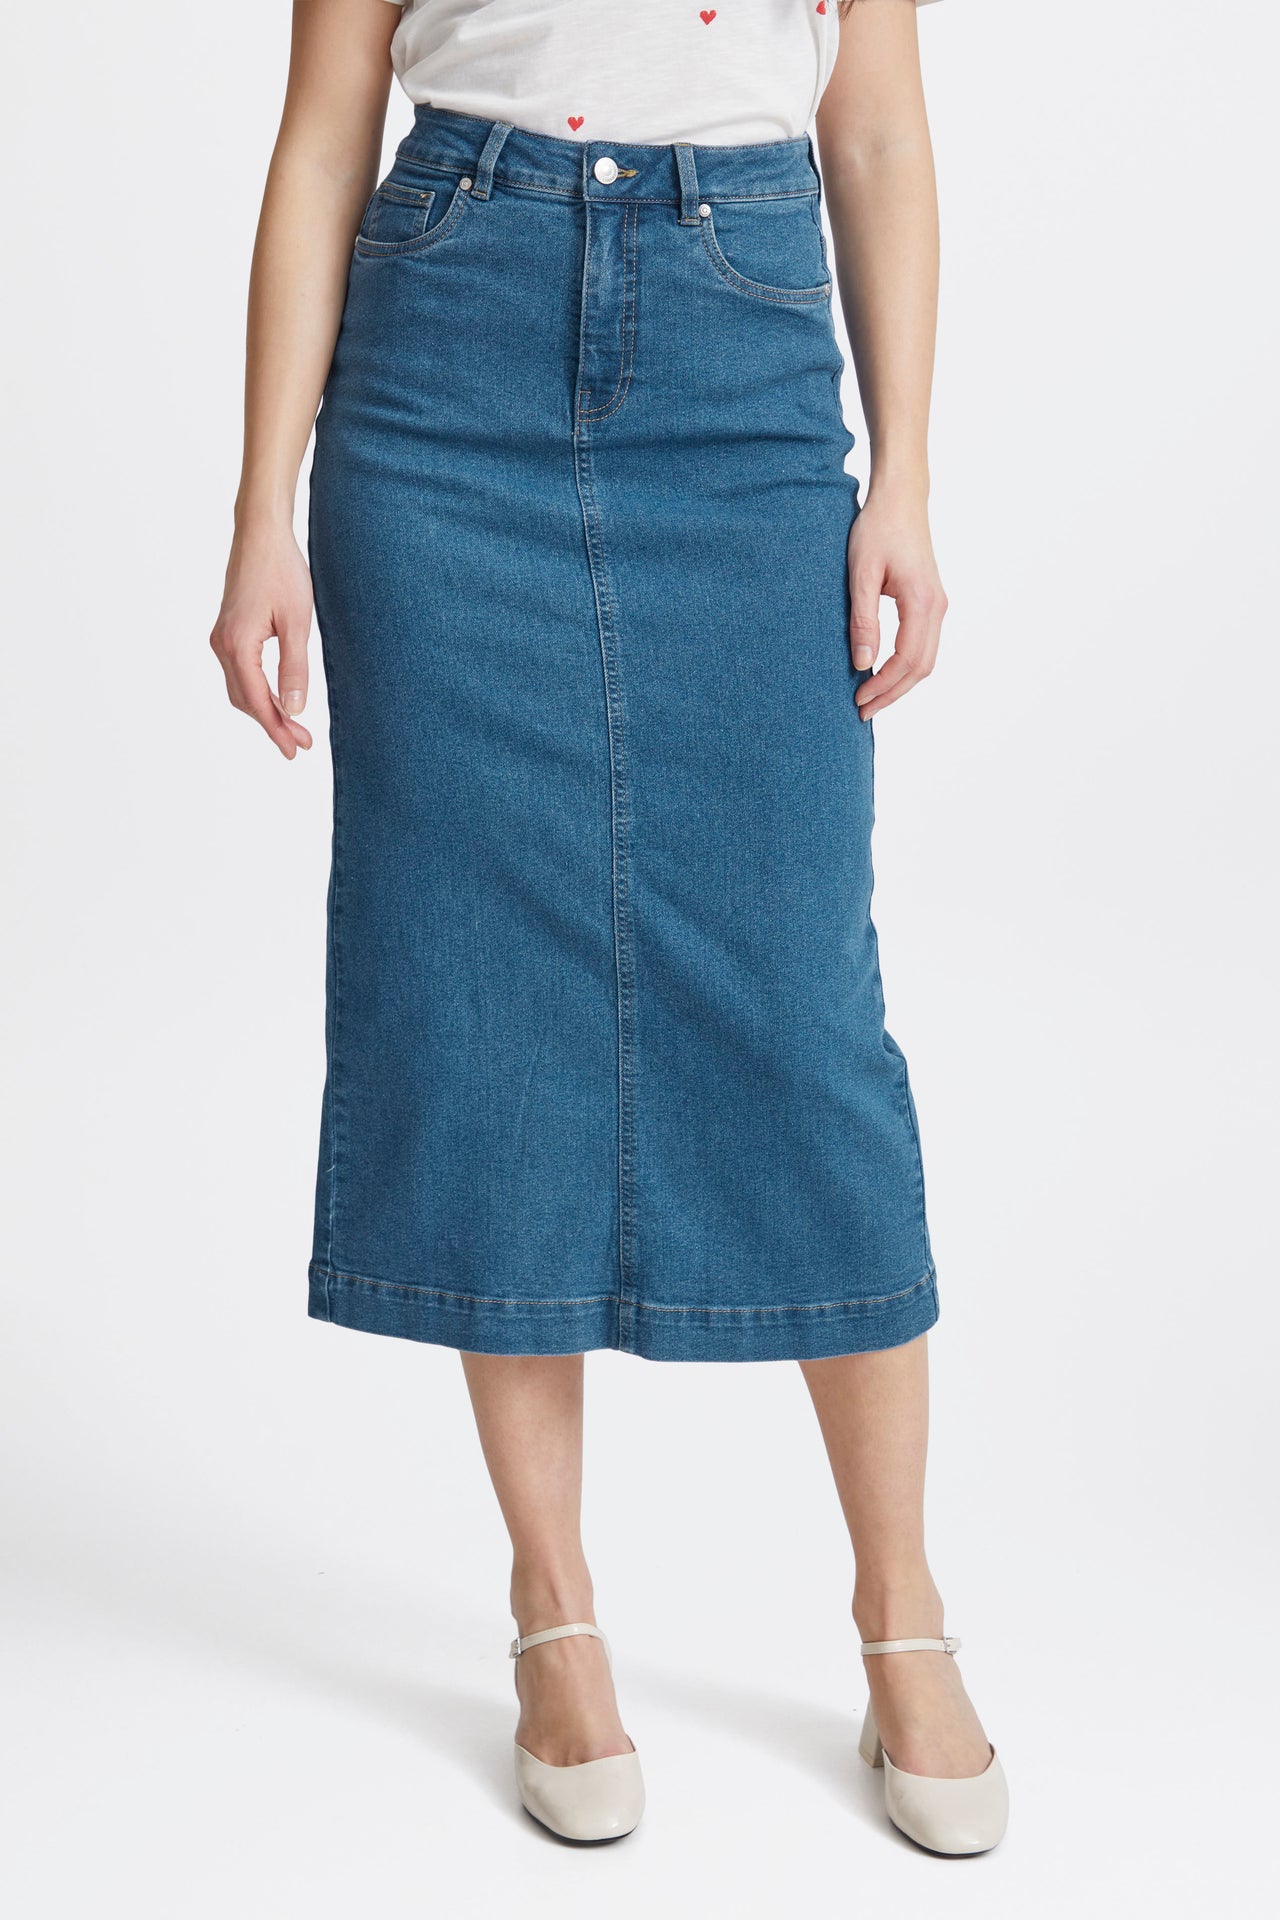 Fransa Denima Mid Blue Denim Skirt